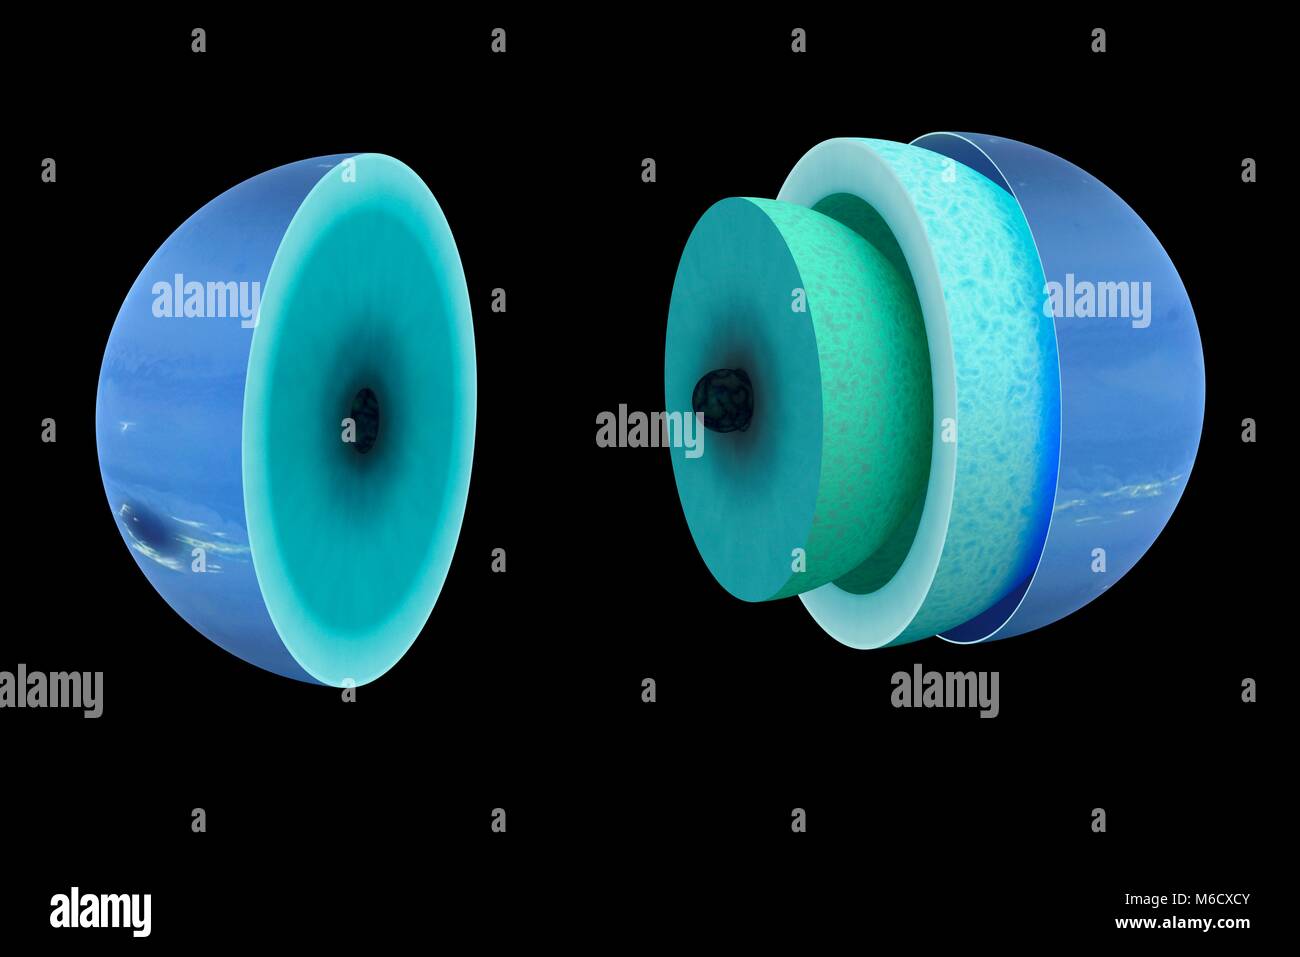 Diagrama que muestra el interior teórica del hielo gigante planeta Neptuno. Probablemente tiene un aspecto muy similar al del interior de Urano. En el centro es un núcleo rocoso y helado, similar y el tamaño y la masa de la tierra. Este está recubierto de un espeso manto interior, una mezcla de diversas con escarcha ices incluido el metano, el amoniaco y agua. Por encima de este es el manto exterior, que se compone de una mezcla de hidrógeno líquido y otros elementos. Y por último hay una atmósfera densa, compuesta principalmente de hidrógeno, helio y metano. Foto de stock